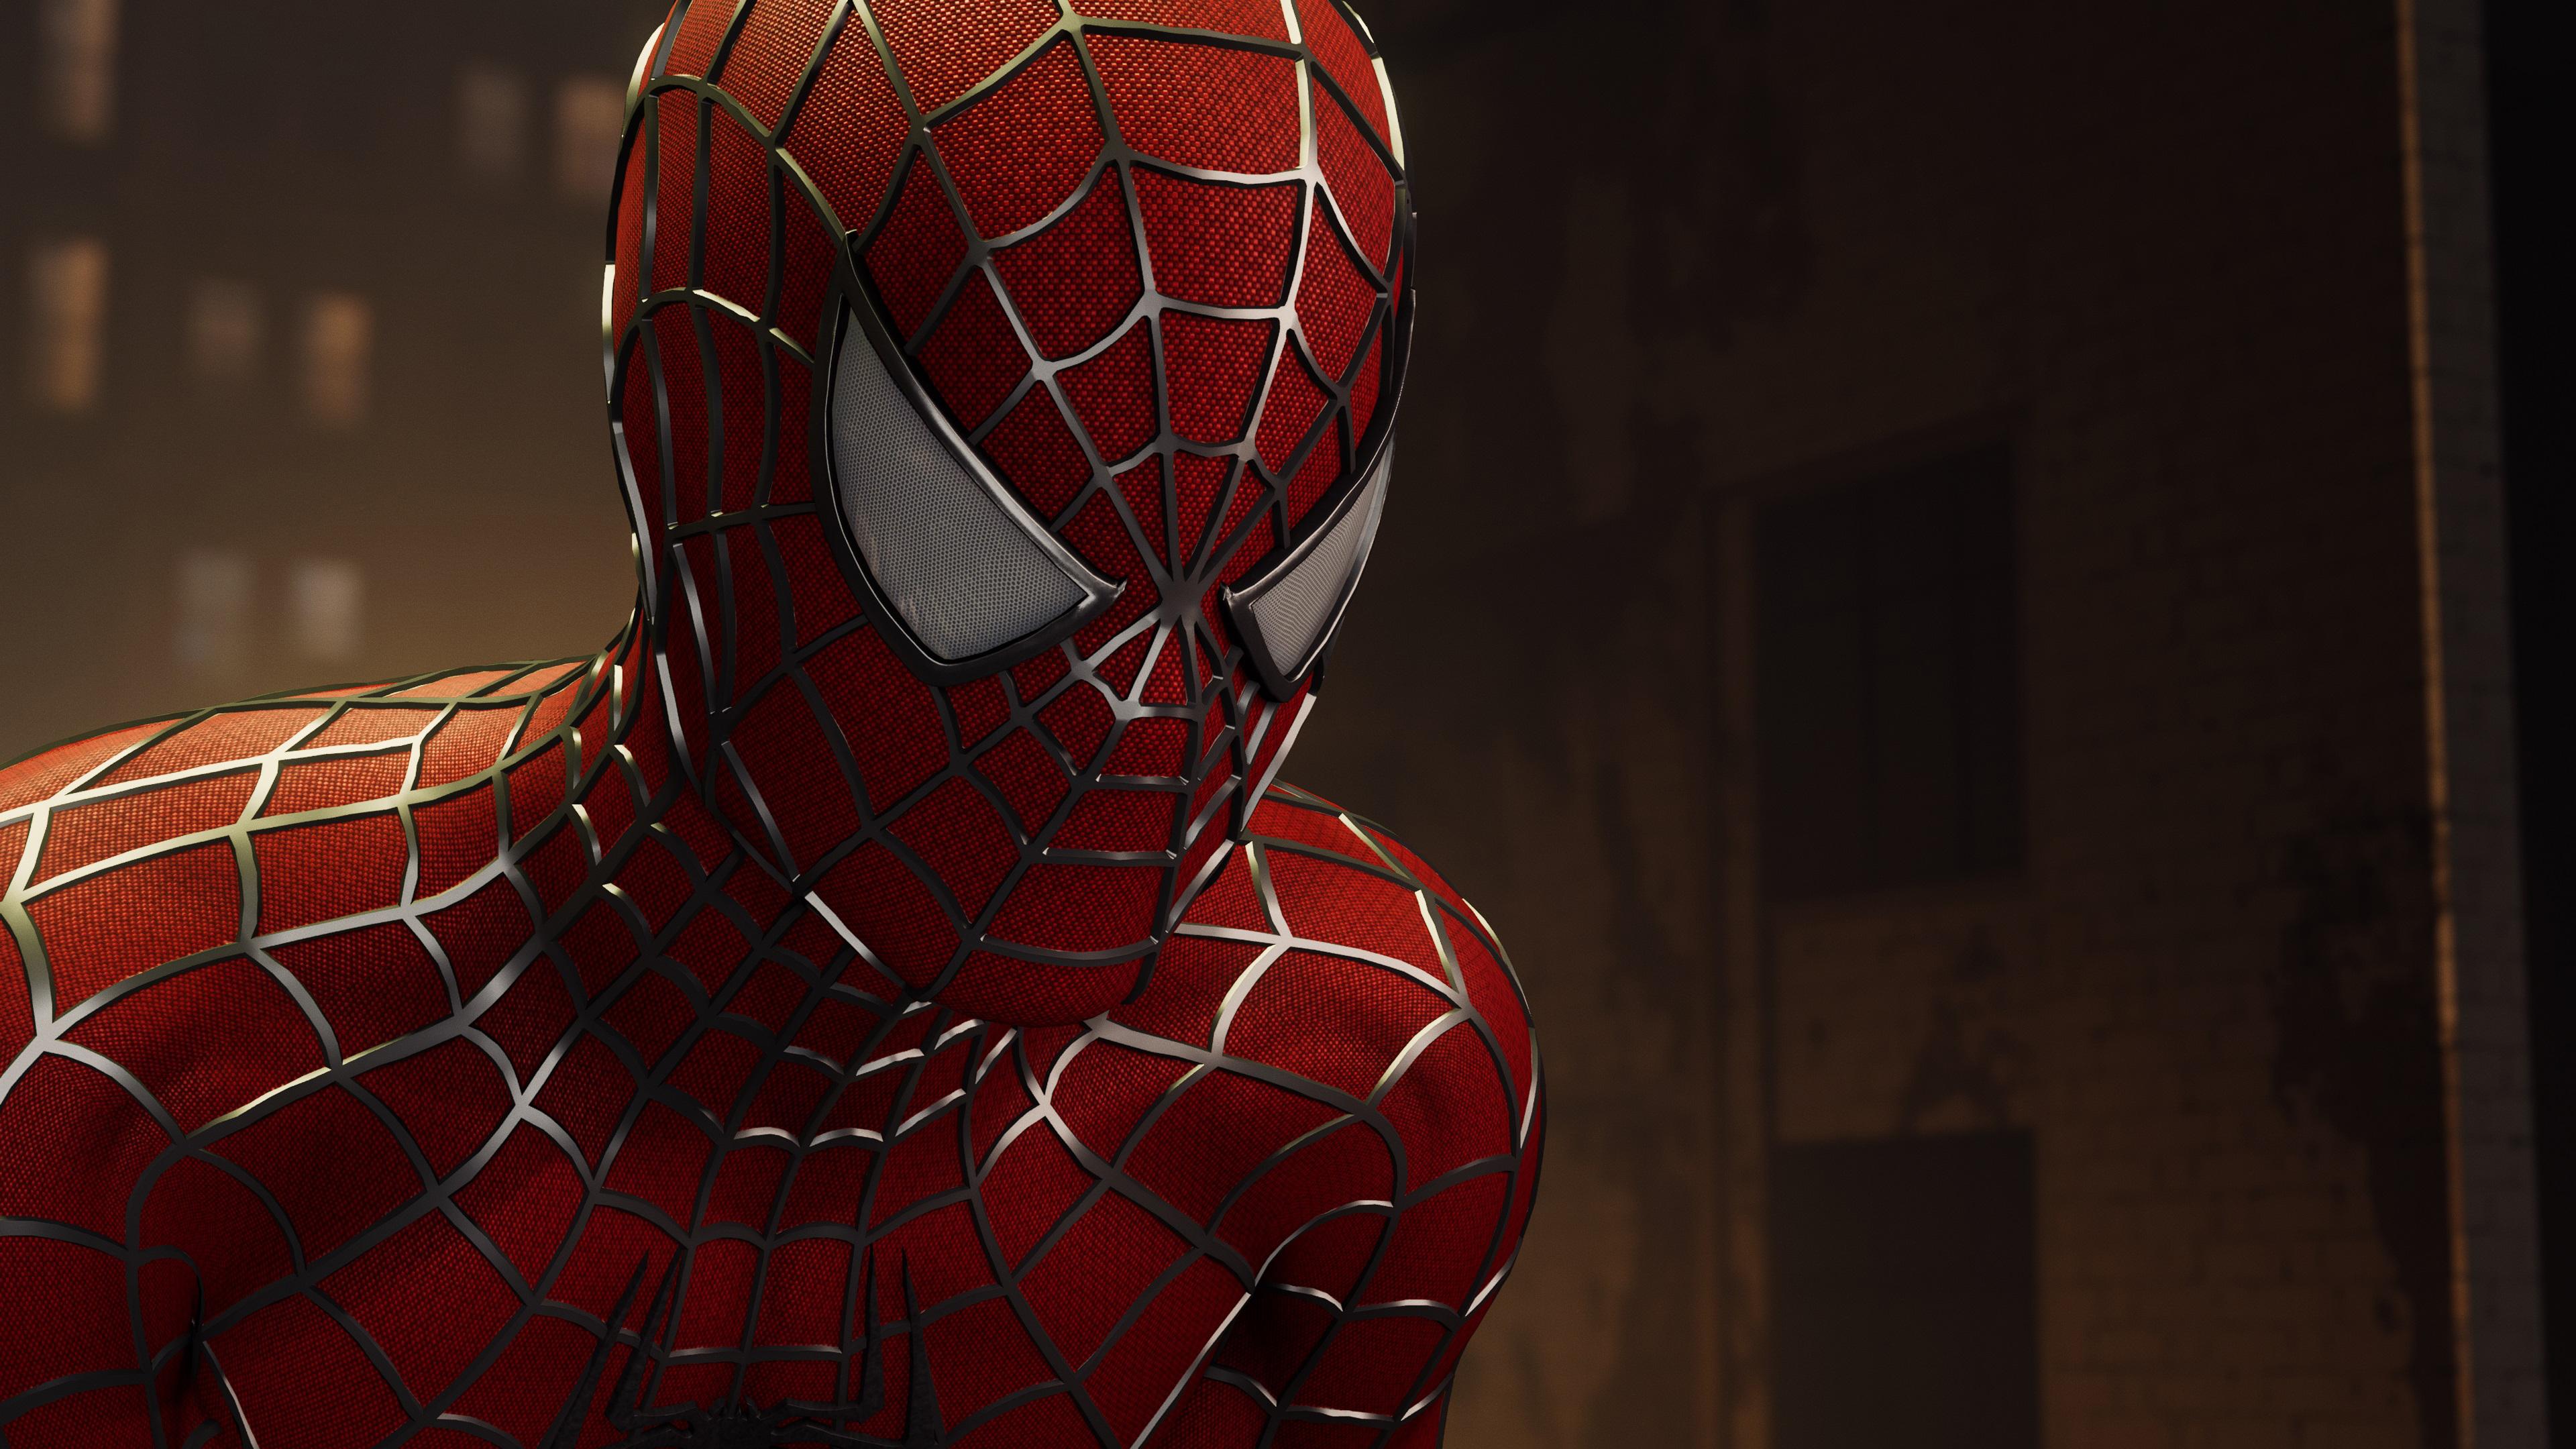 3840 x 2160 · jpeg - Spider-Man 4k Ultra HD Wallpaper | Background Image | 3840x2160 | ID ...